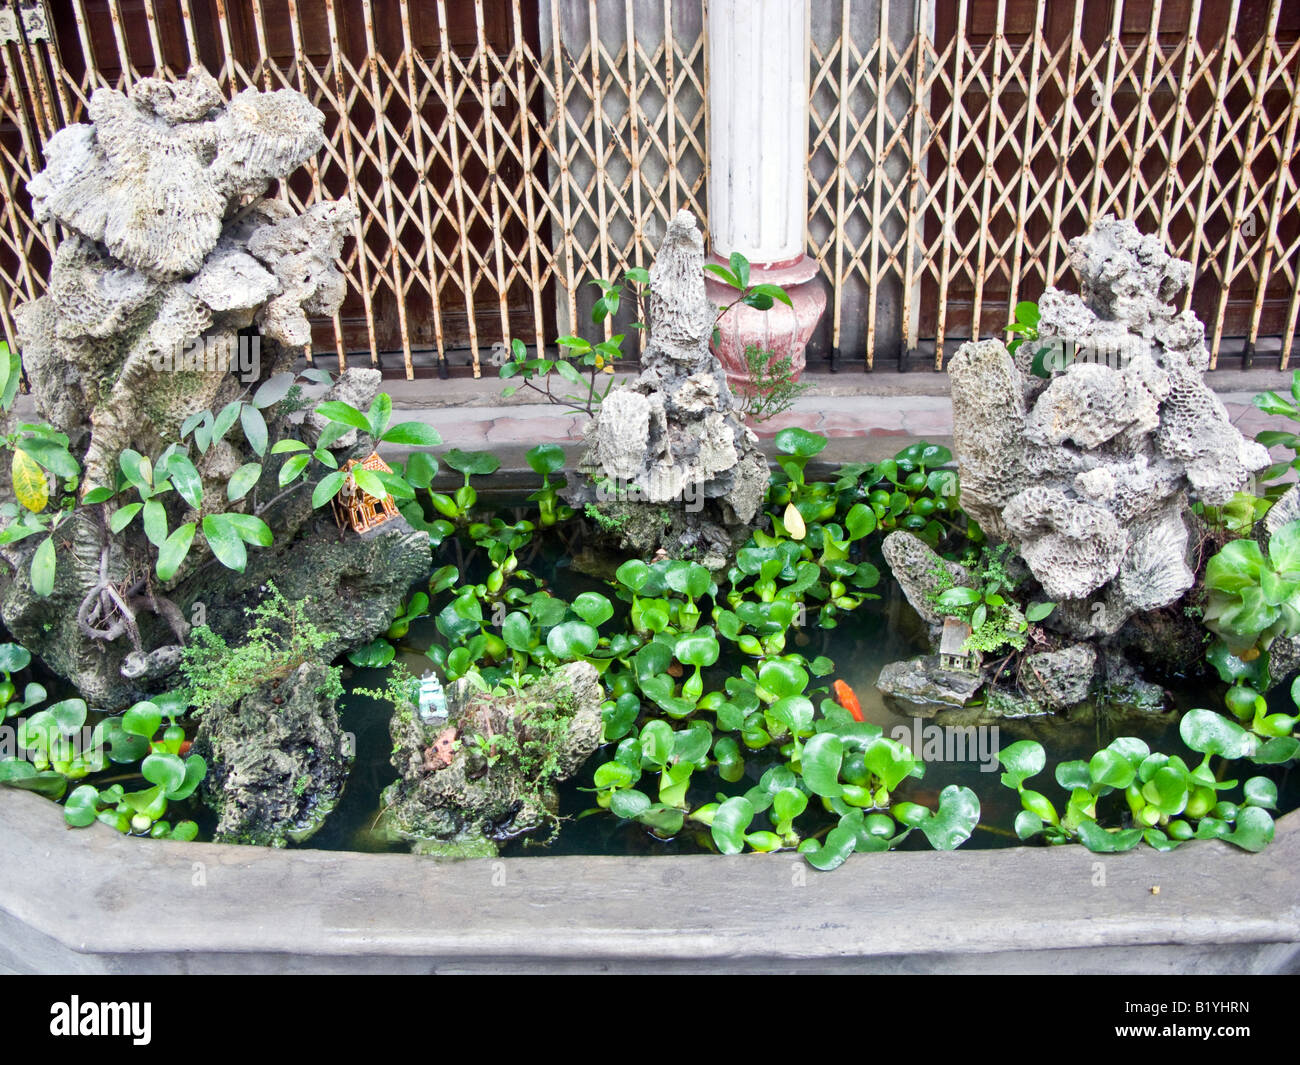 Jardin miniature d'ornement extérieur de classe moyenne apartrment block, Halong Bay, Vietnam Banque D'Images